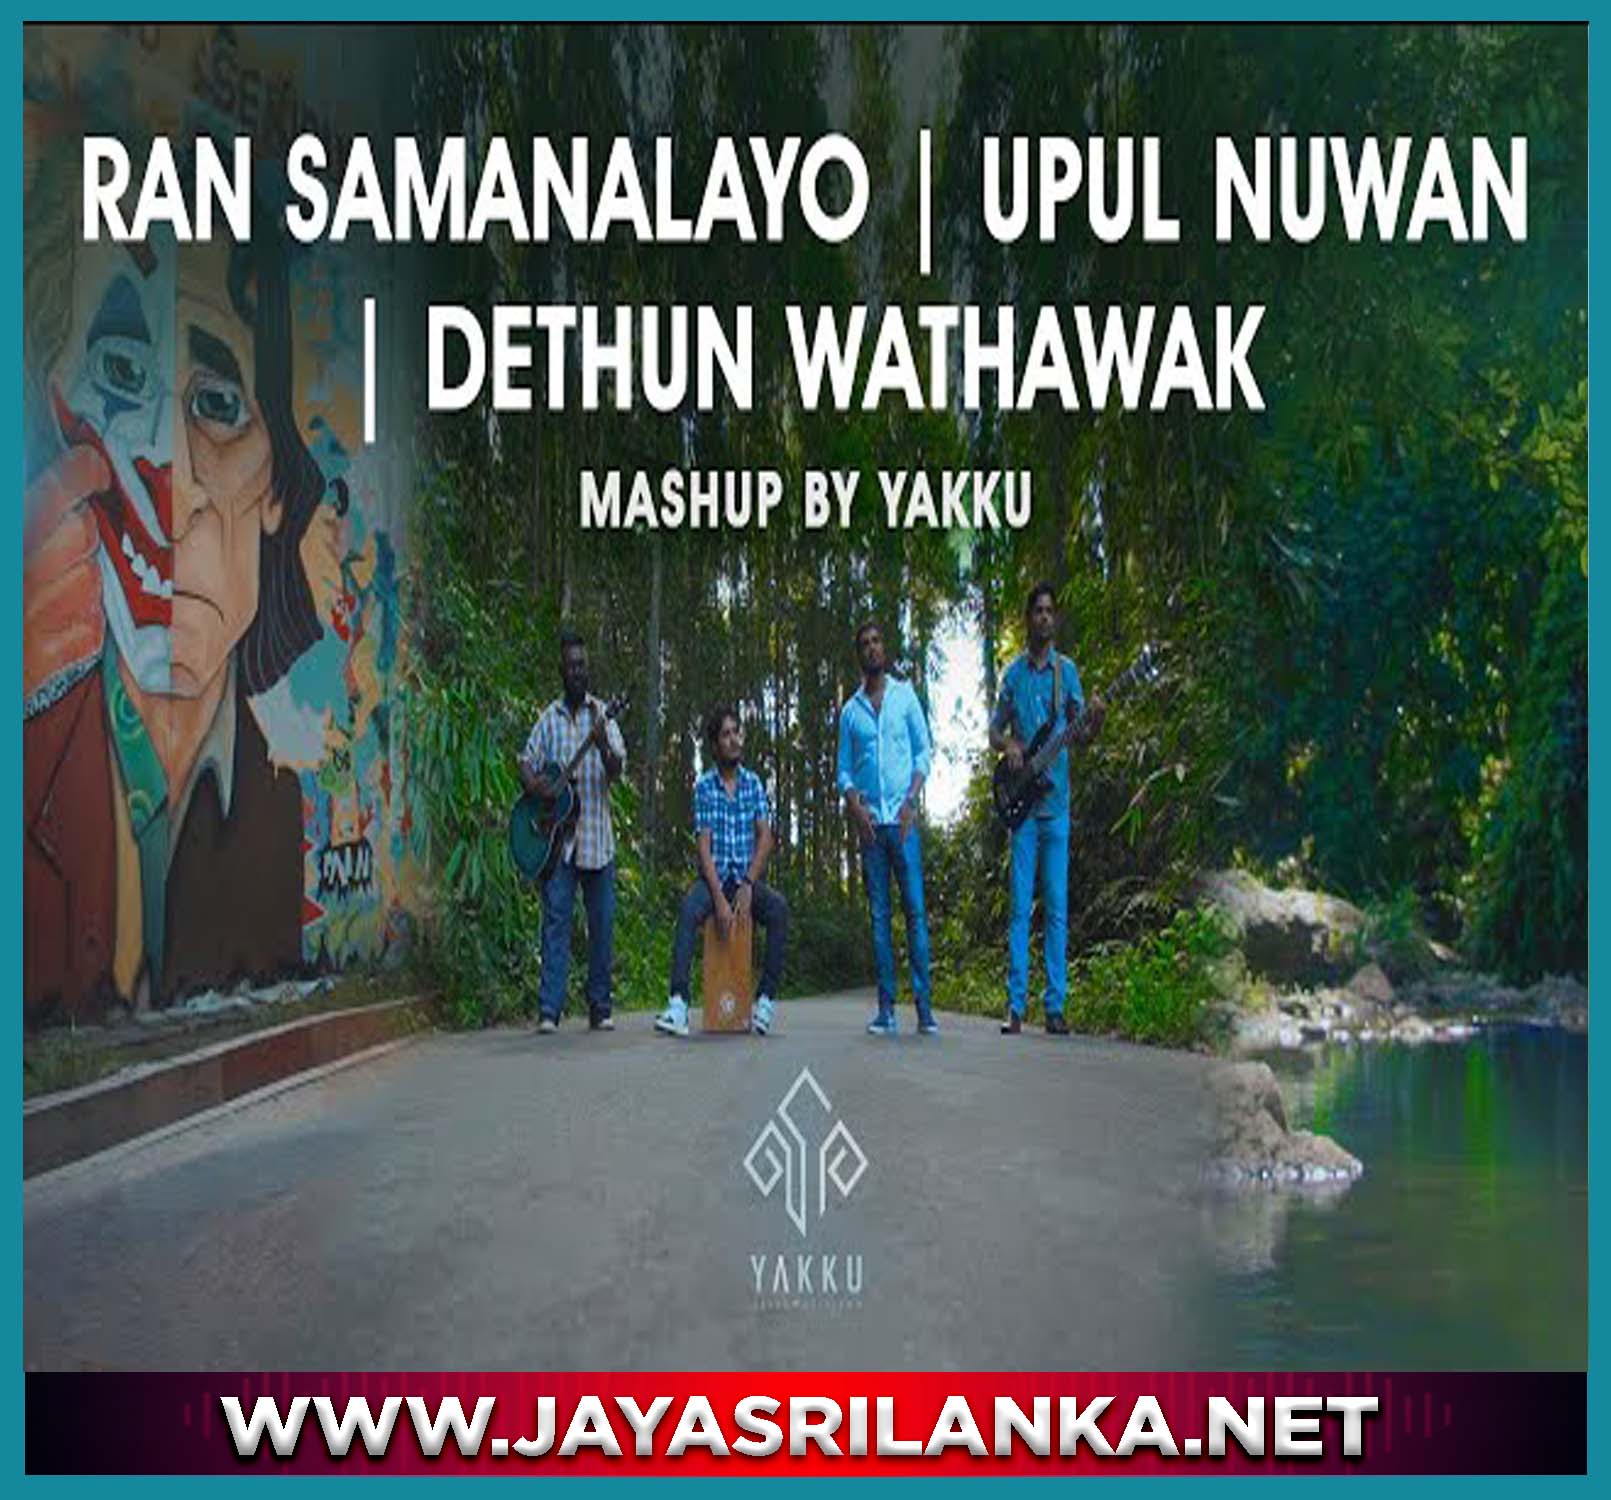 Ran Samanalayo X Upul Nuwan x Dethun Wathawak Mashup